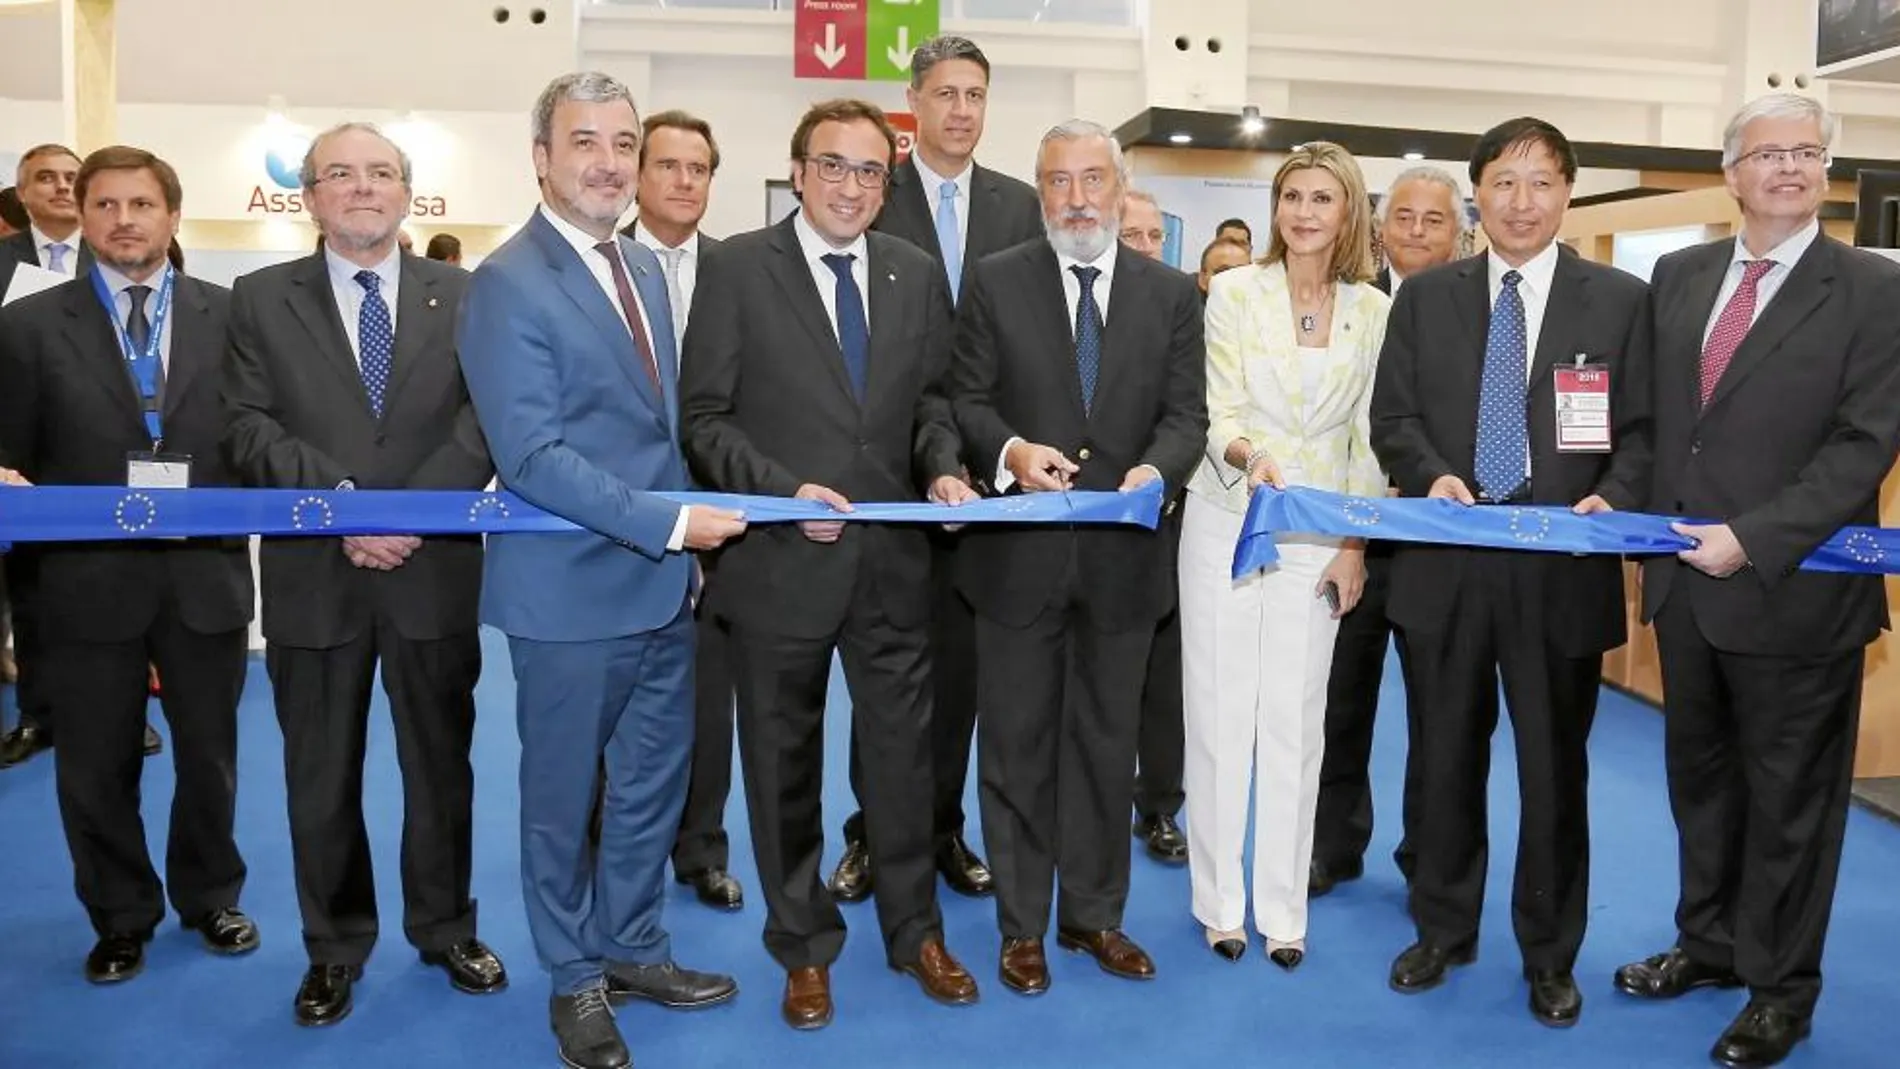 El secretario de Estado Julio Gómez-Pomar, en el centro de la imagen, inaugurando la 18a edición del Salón Internacional de la Logística ayer en Barcelona